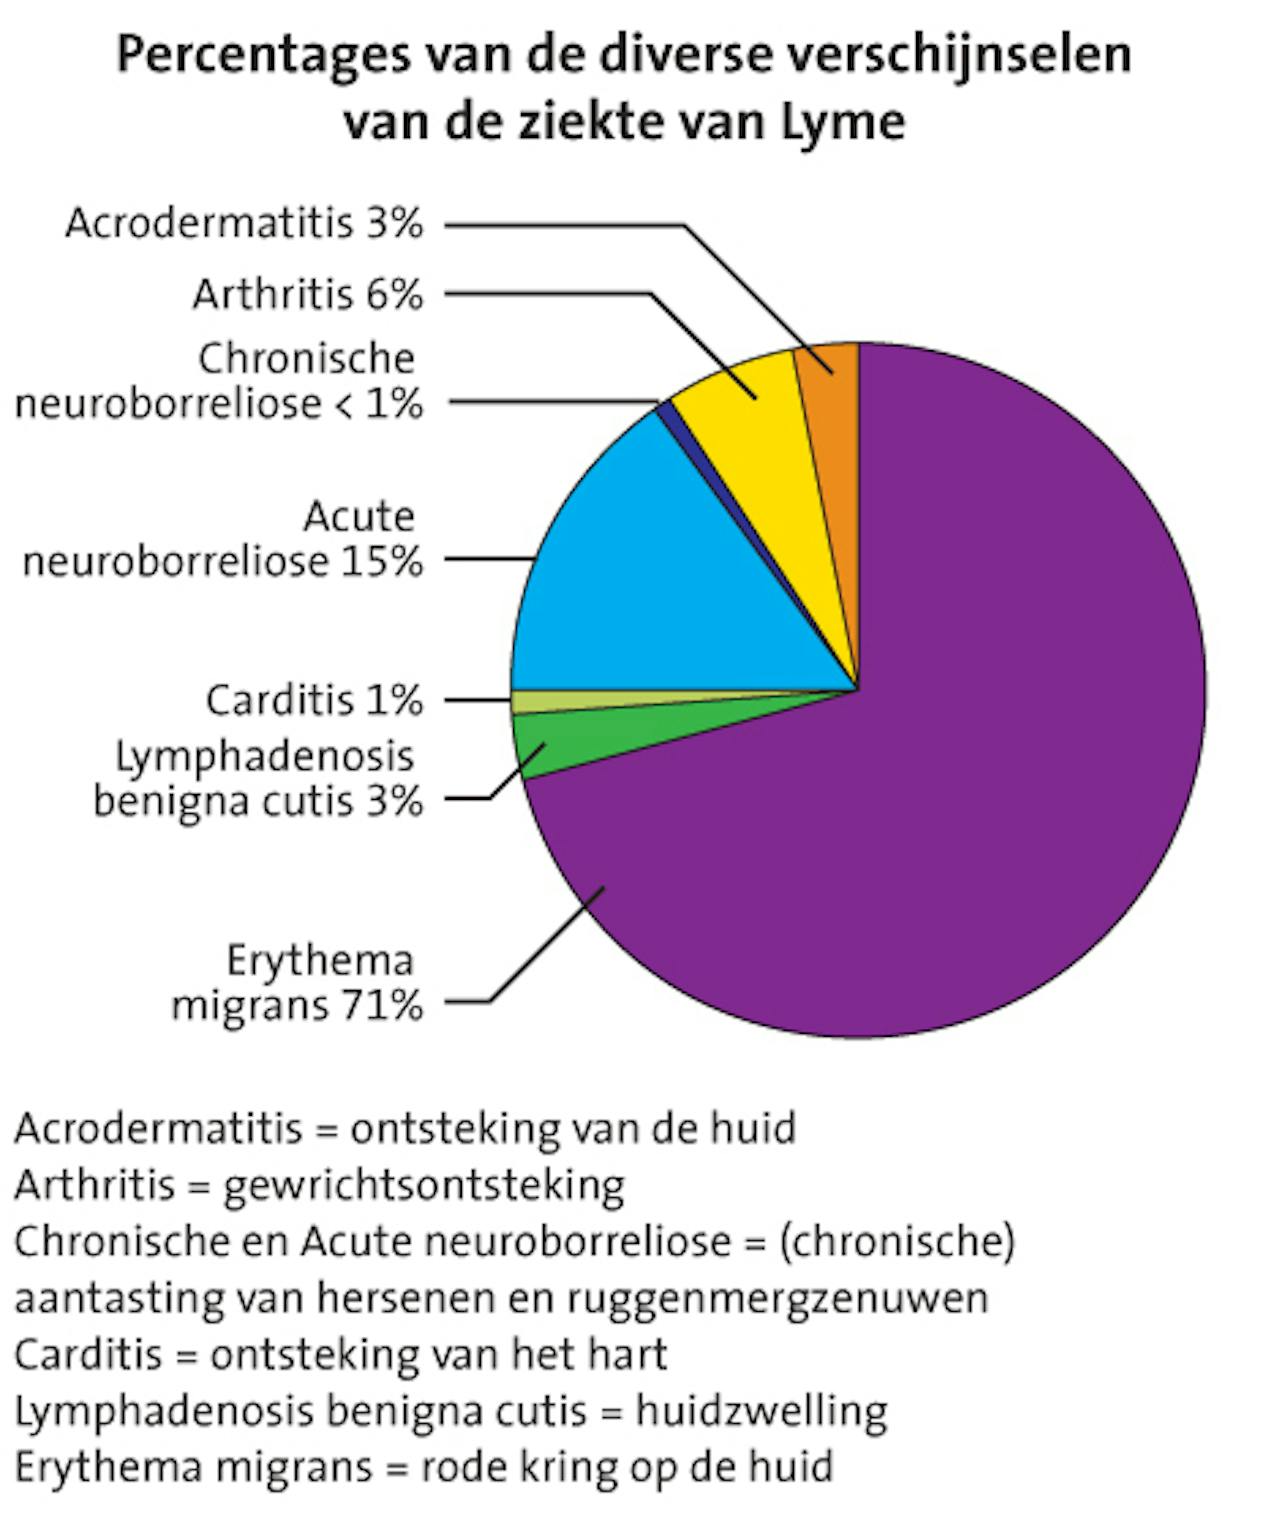 Een cirkeldiagram dat de percentages van de diverse verschijnselen van de ziekte van Lyme weergeeft.